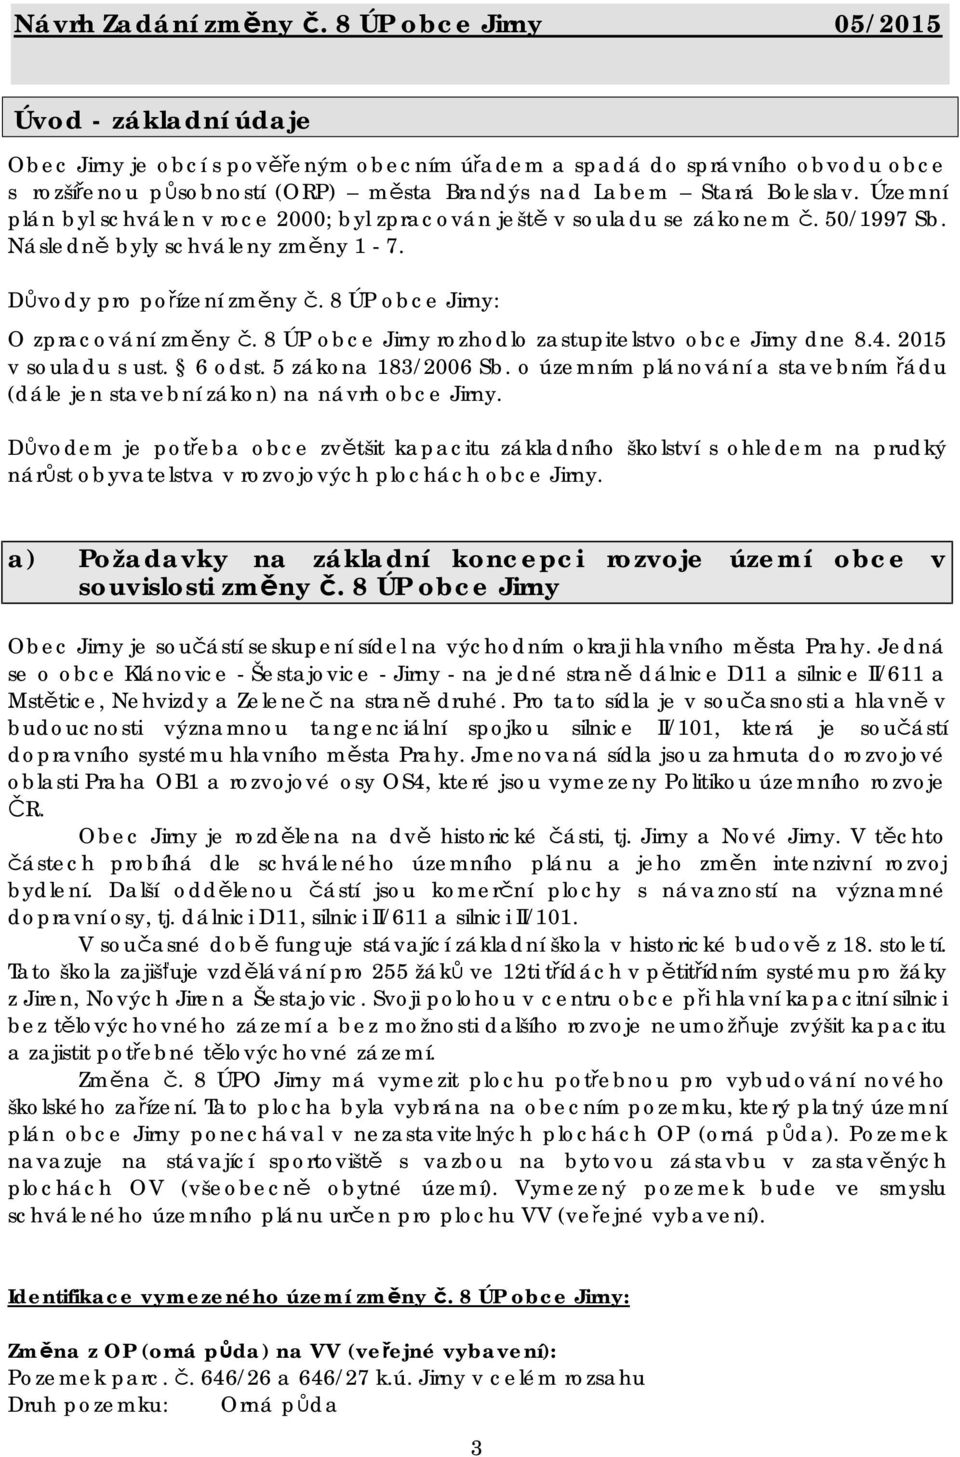 Důvody pro pořízení : O zpracování rozhodlo zastupitelstvo obce Jirny dne 8.4. 2015 v souladu s ust. 6 odst. 5 zákona 183/2006 Sb.